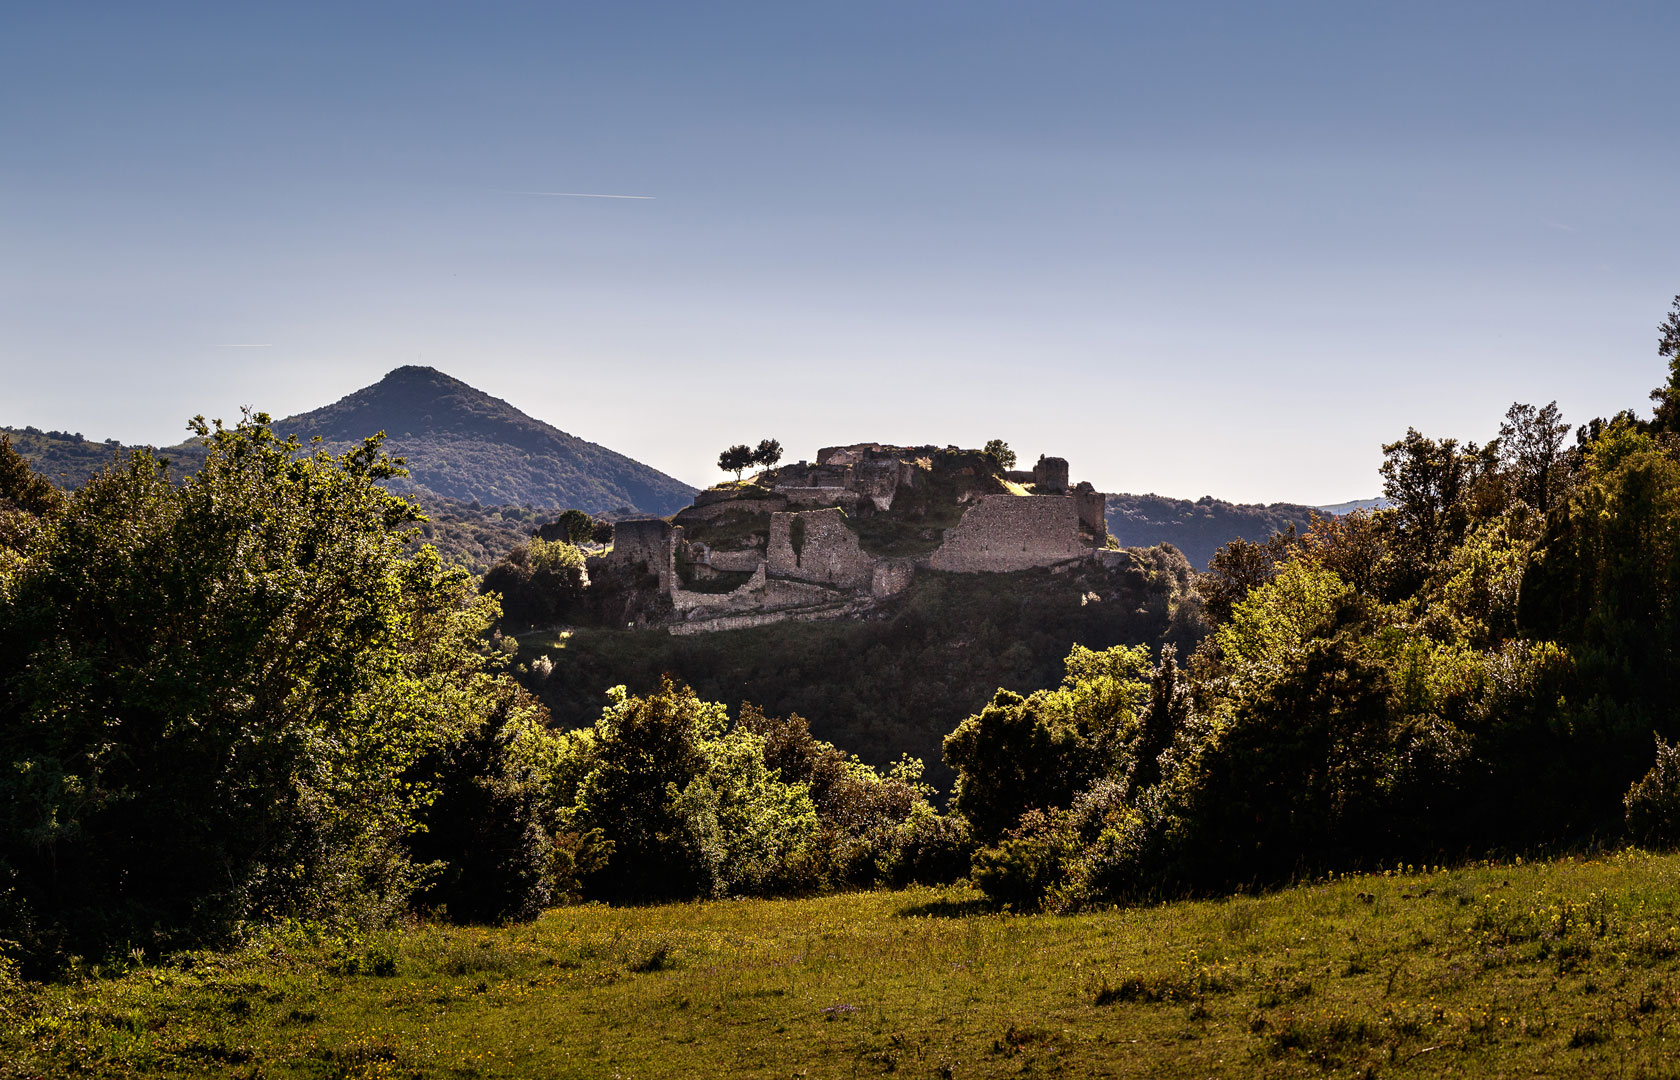 L’autre spécificité paysagère du château de Termes est son environnement fortement boisé, caractérisé par une végétation méditerranéenne typique.